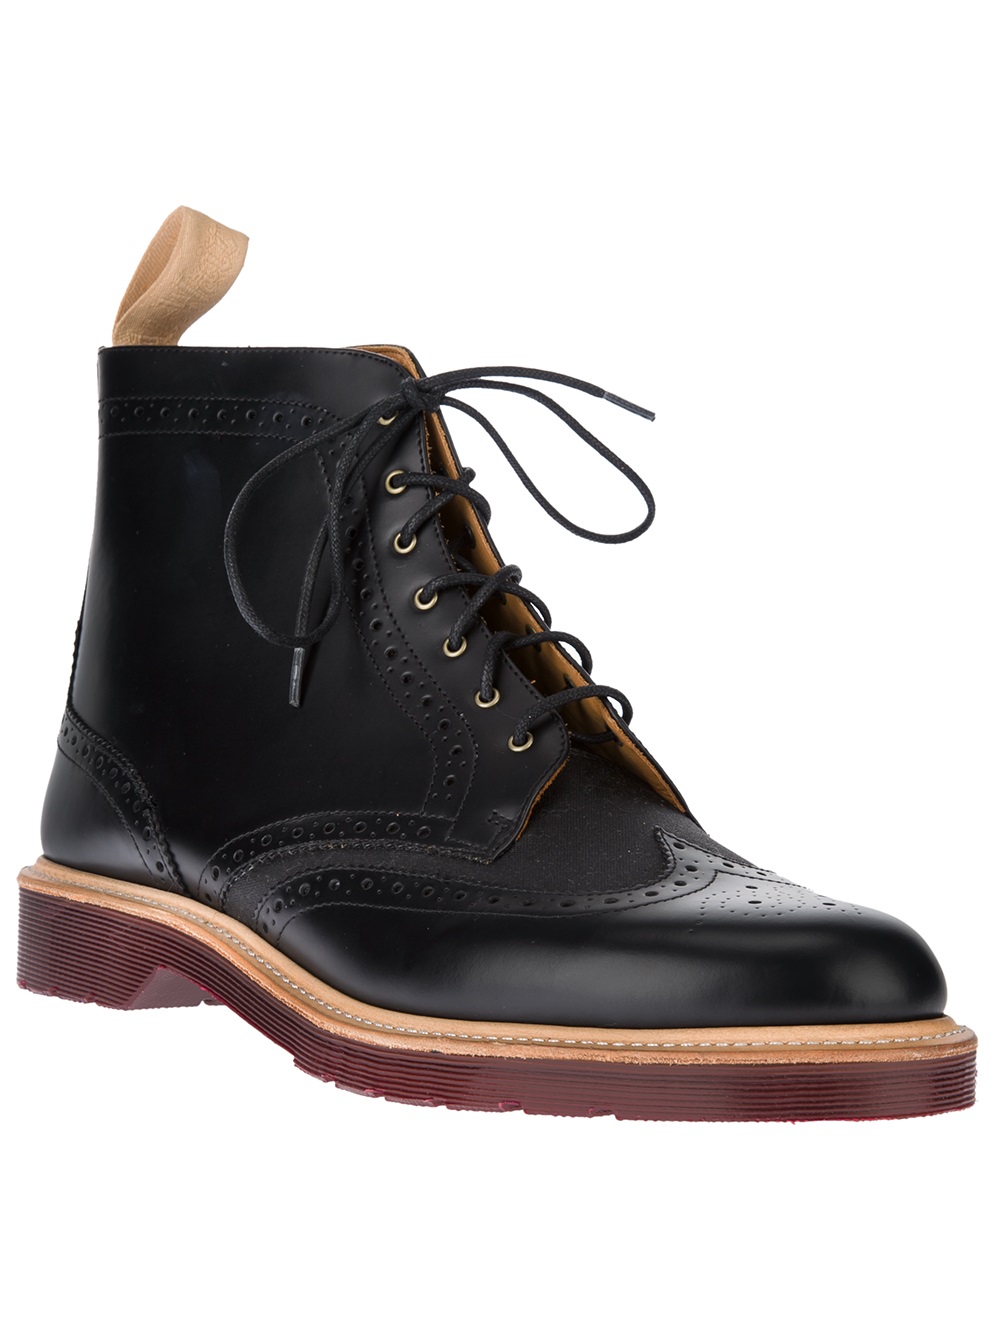 Lyst - Dr. Martens Bentley Boot in Black for Men